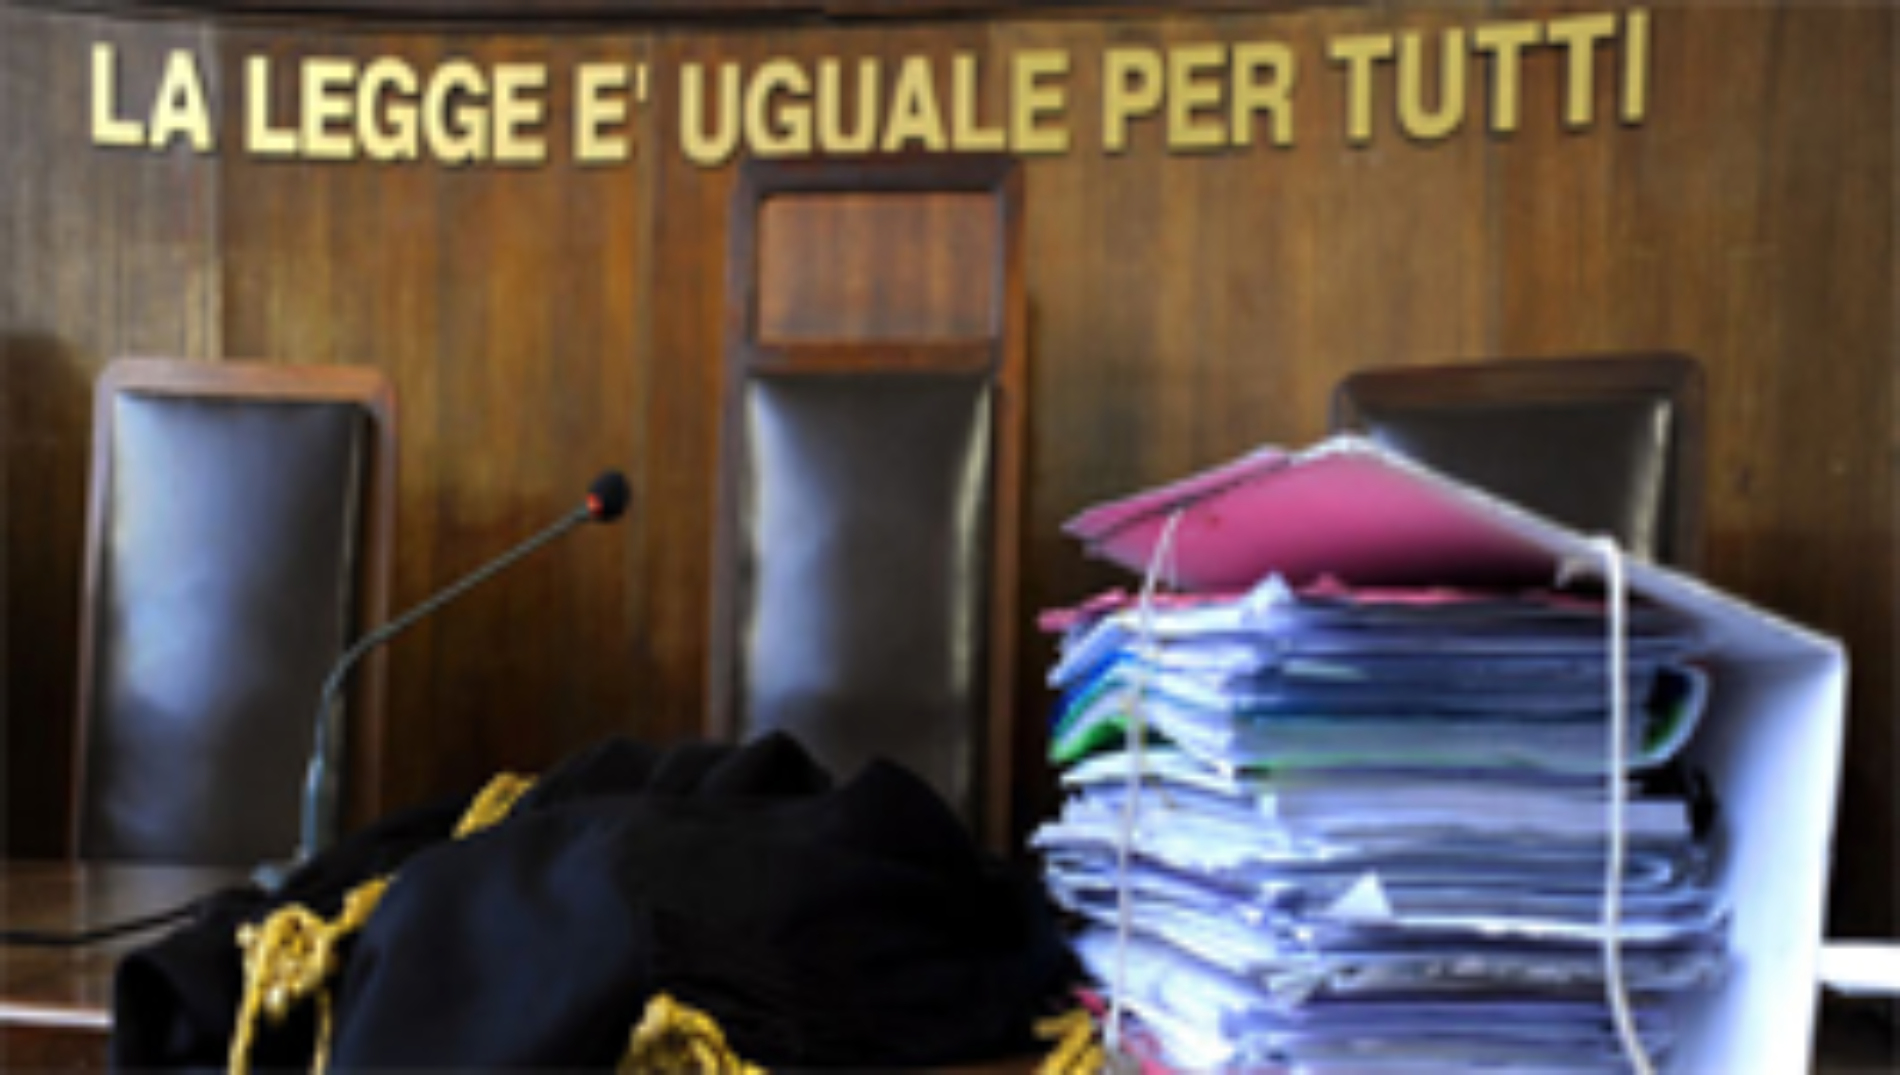 BARRAFRANCA. Operazione “Ultra”: Arresti domiciliari per Adriano Giuseppe Bevilacqua.